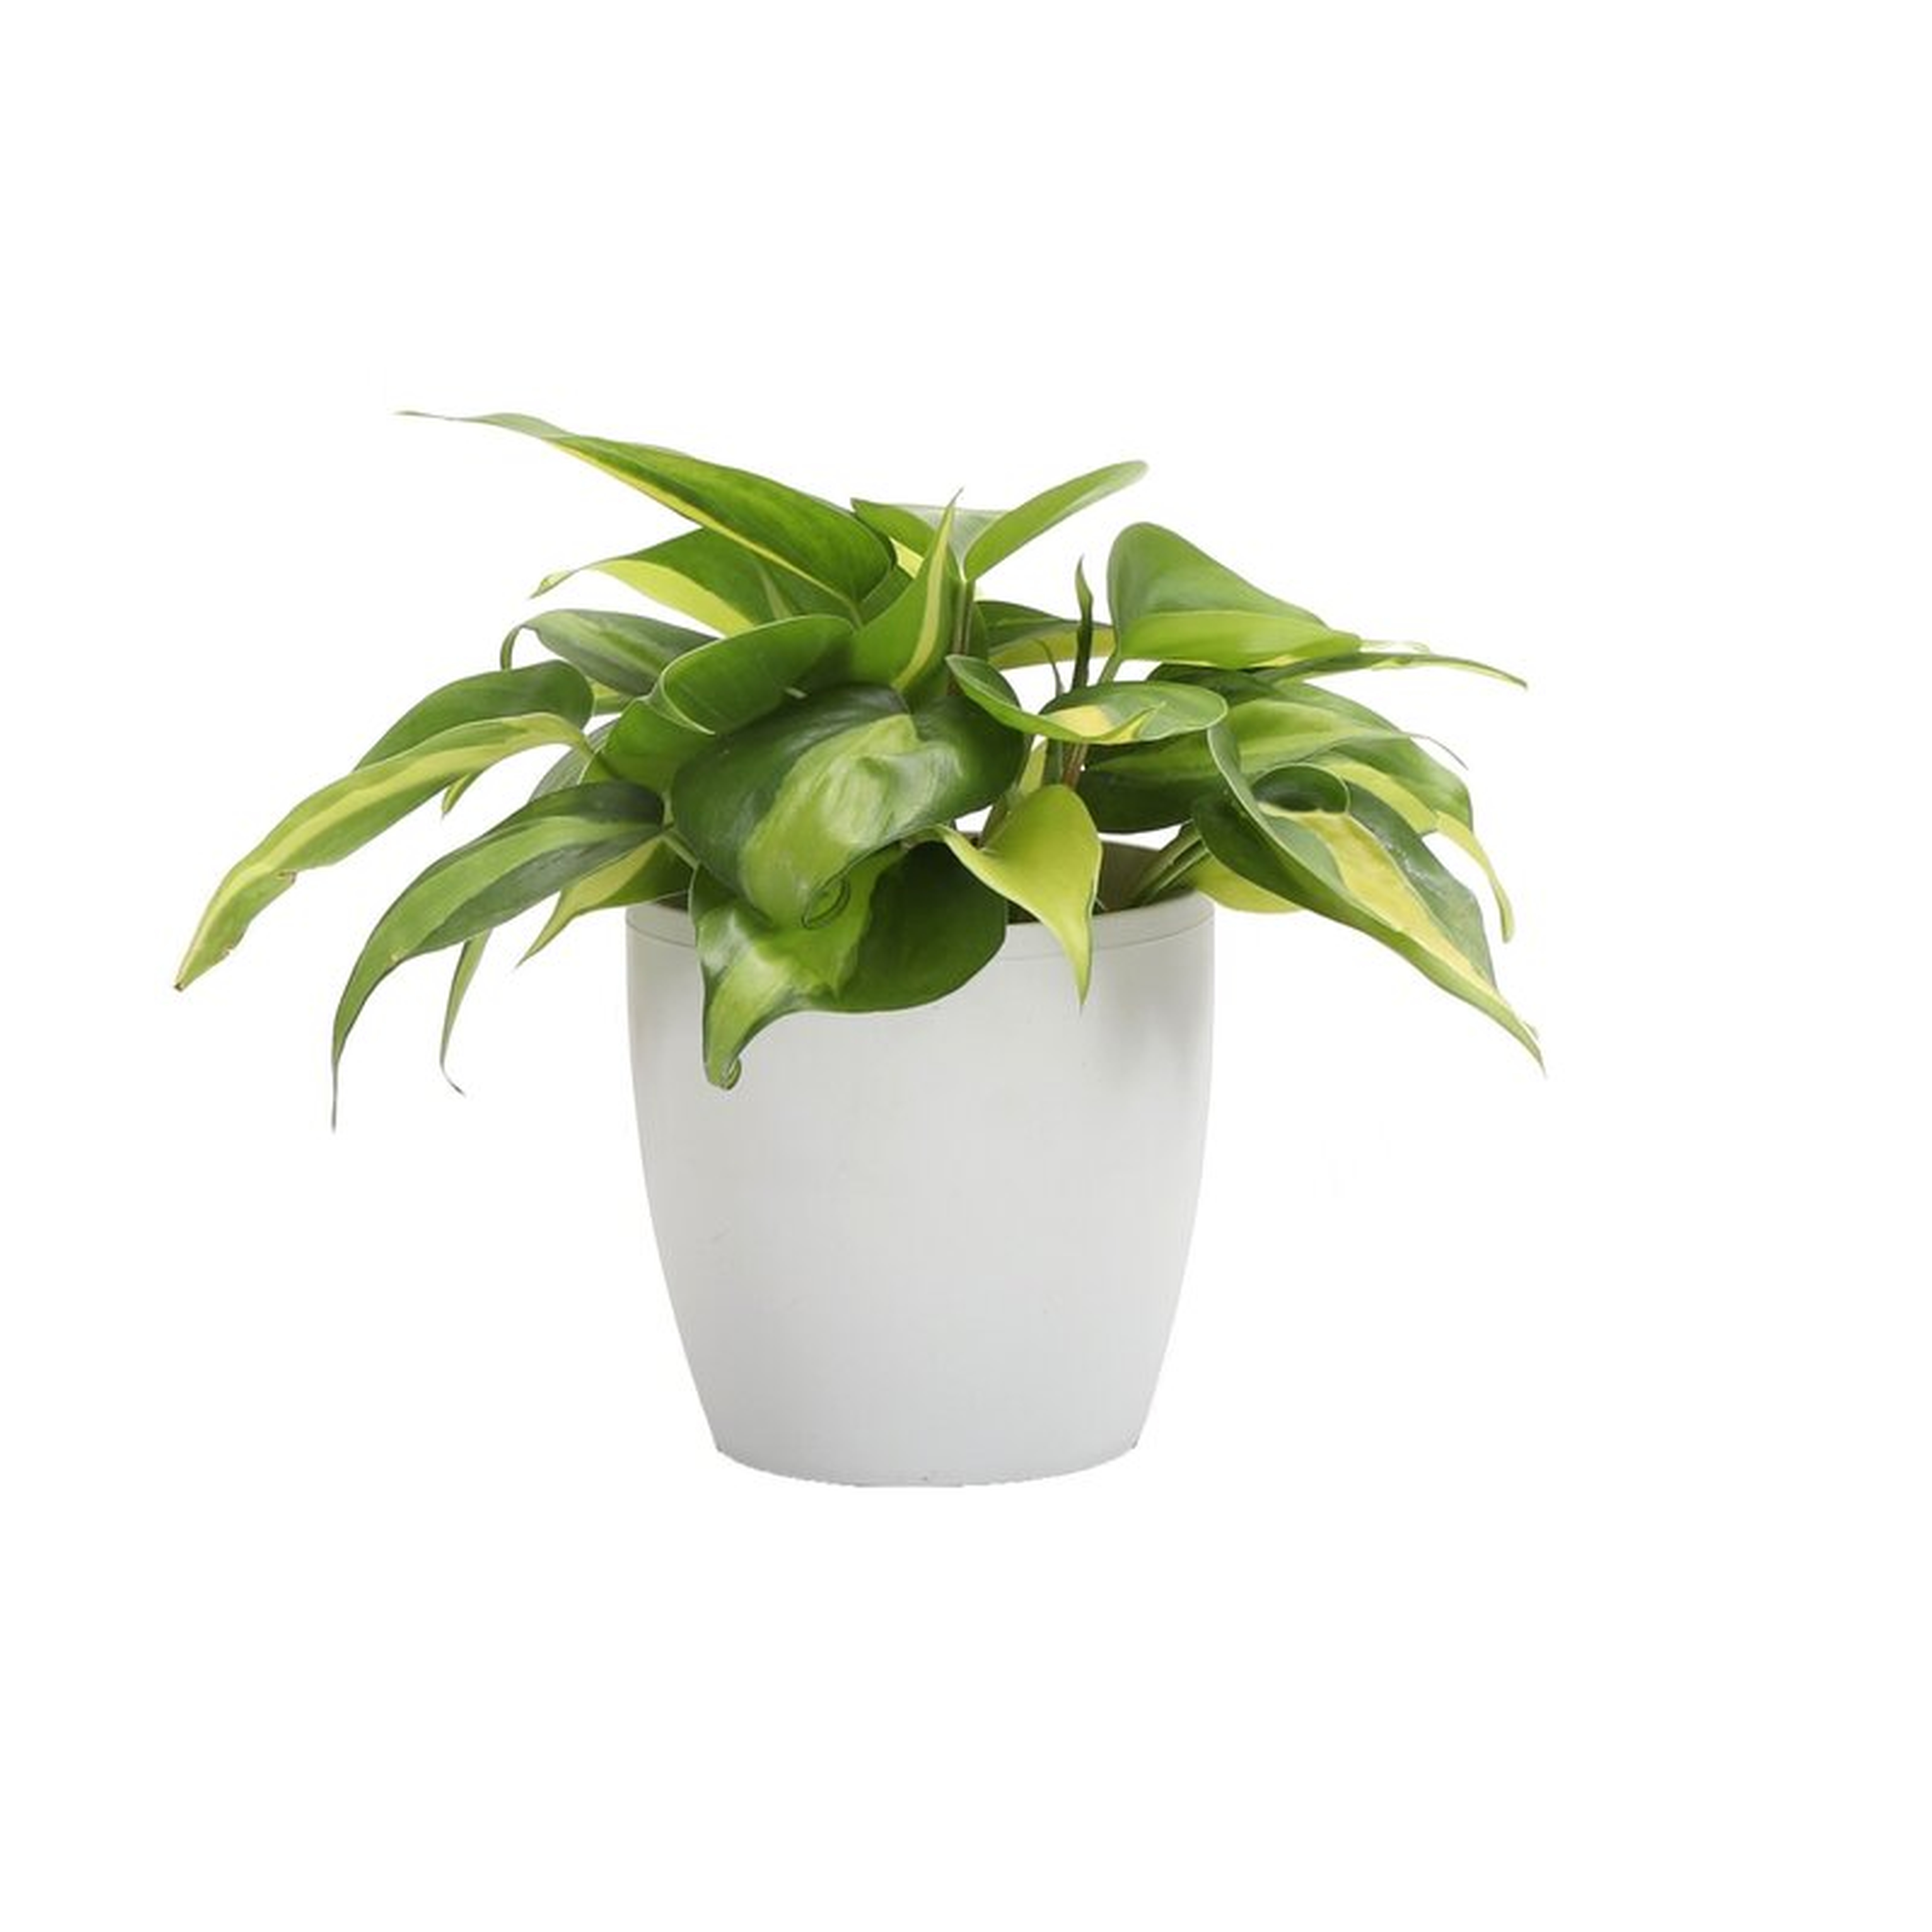 Thorsen's Greenhouse 6'' Philodendron Plant Desktop Plant in a Plastic Pot, White Pot - Wayfair